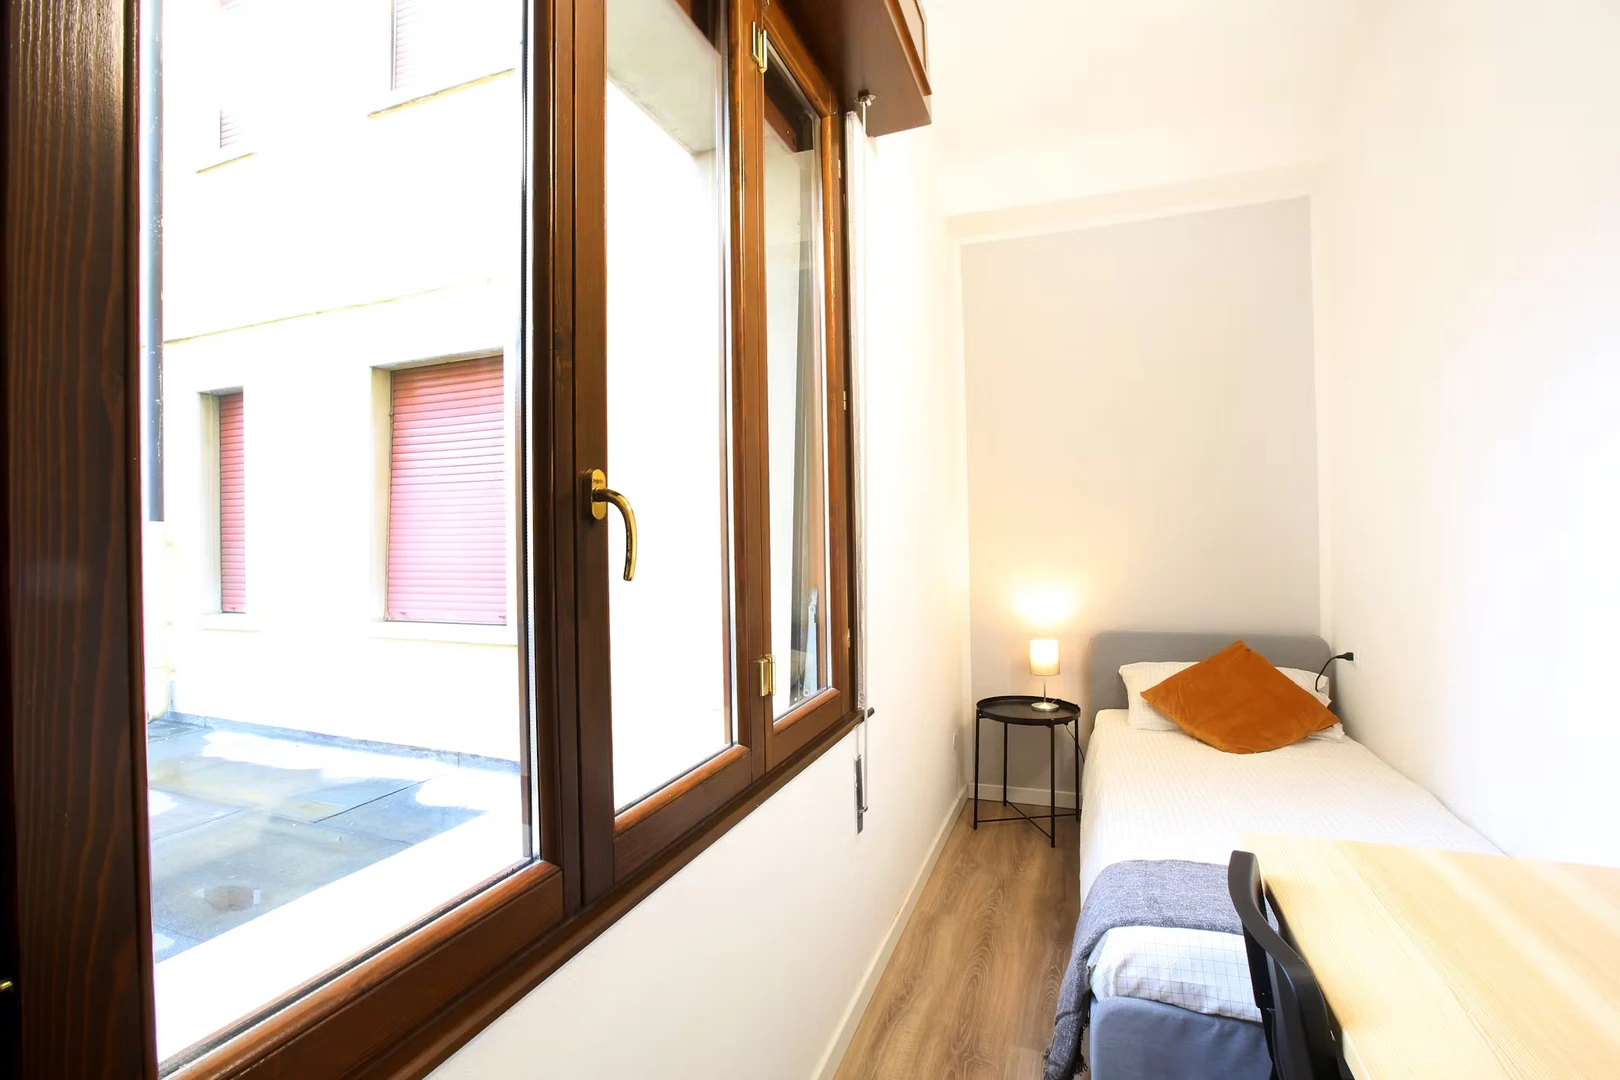 Alquiler de habitaciones por meses en Módena